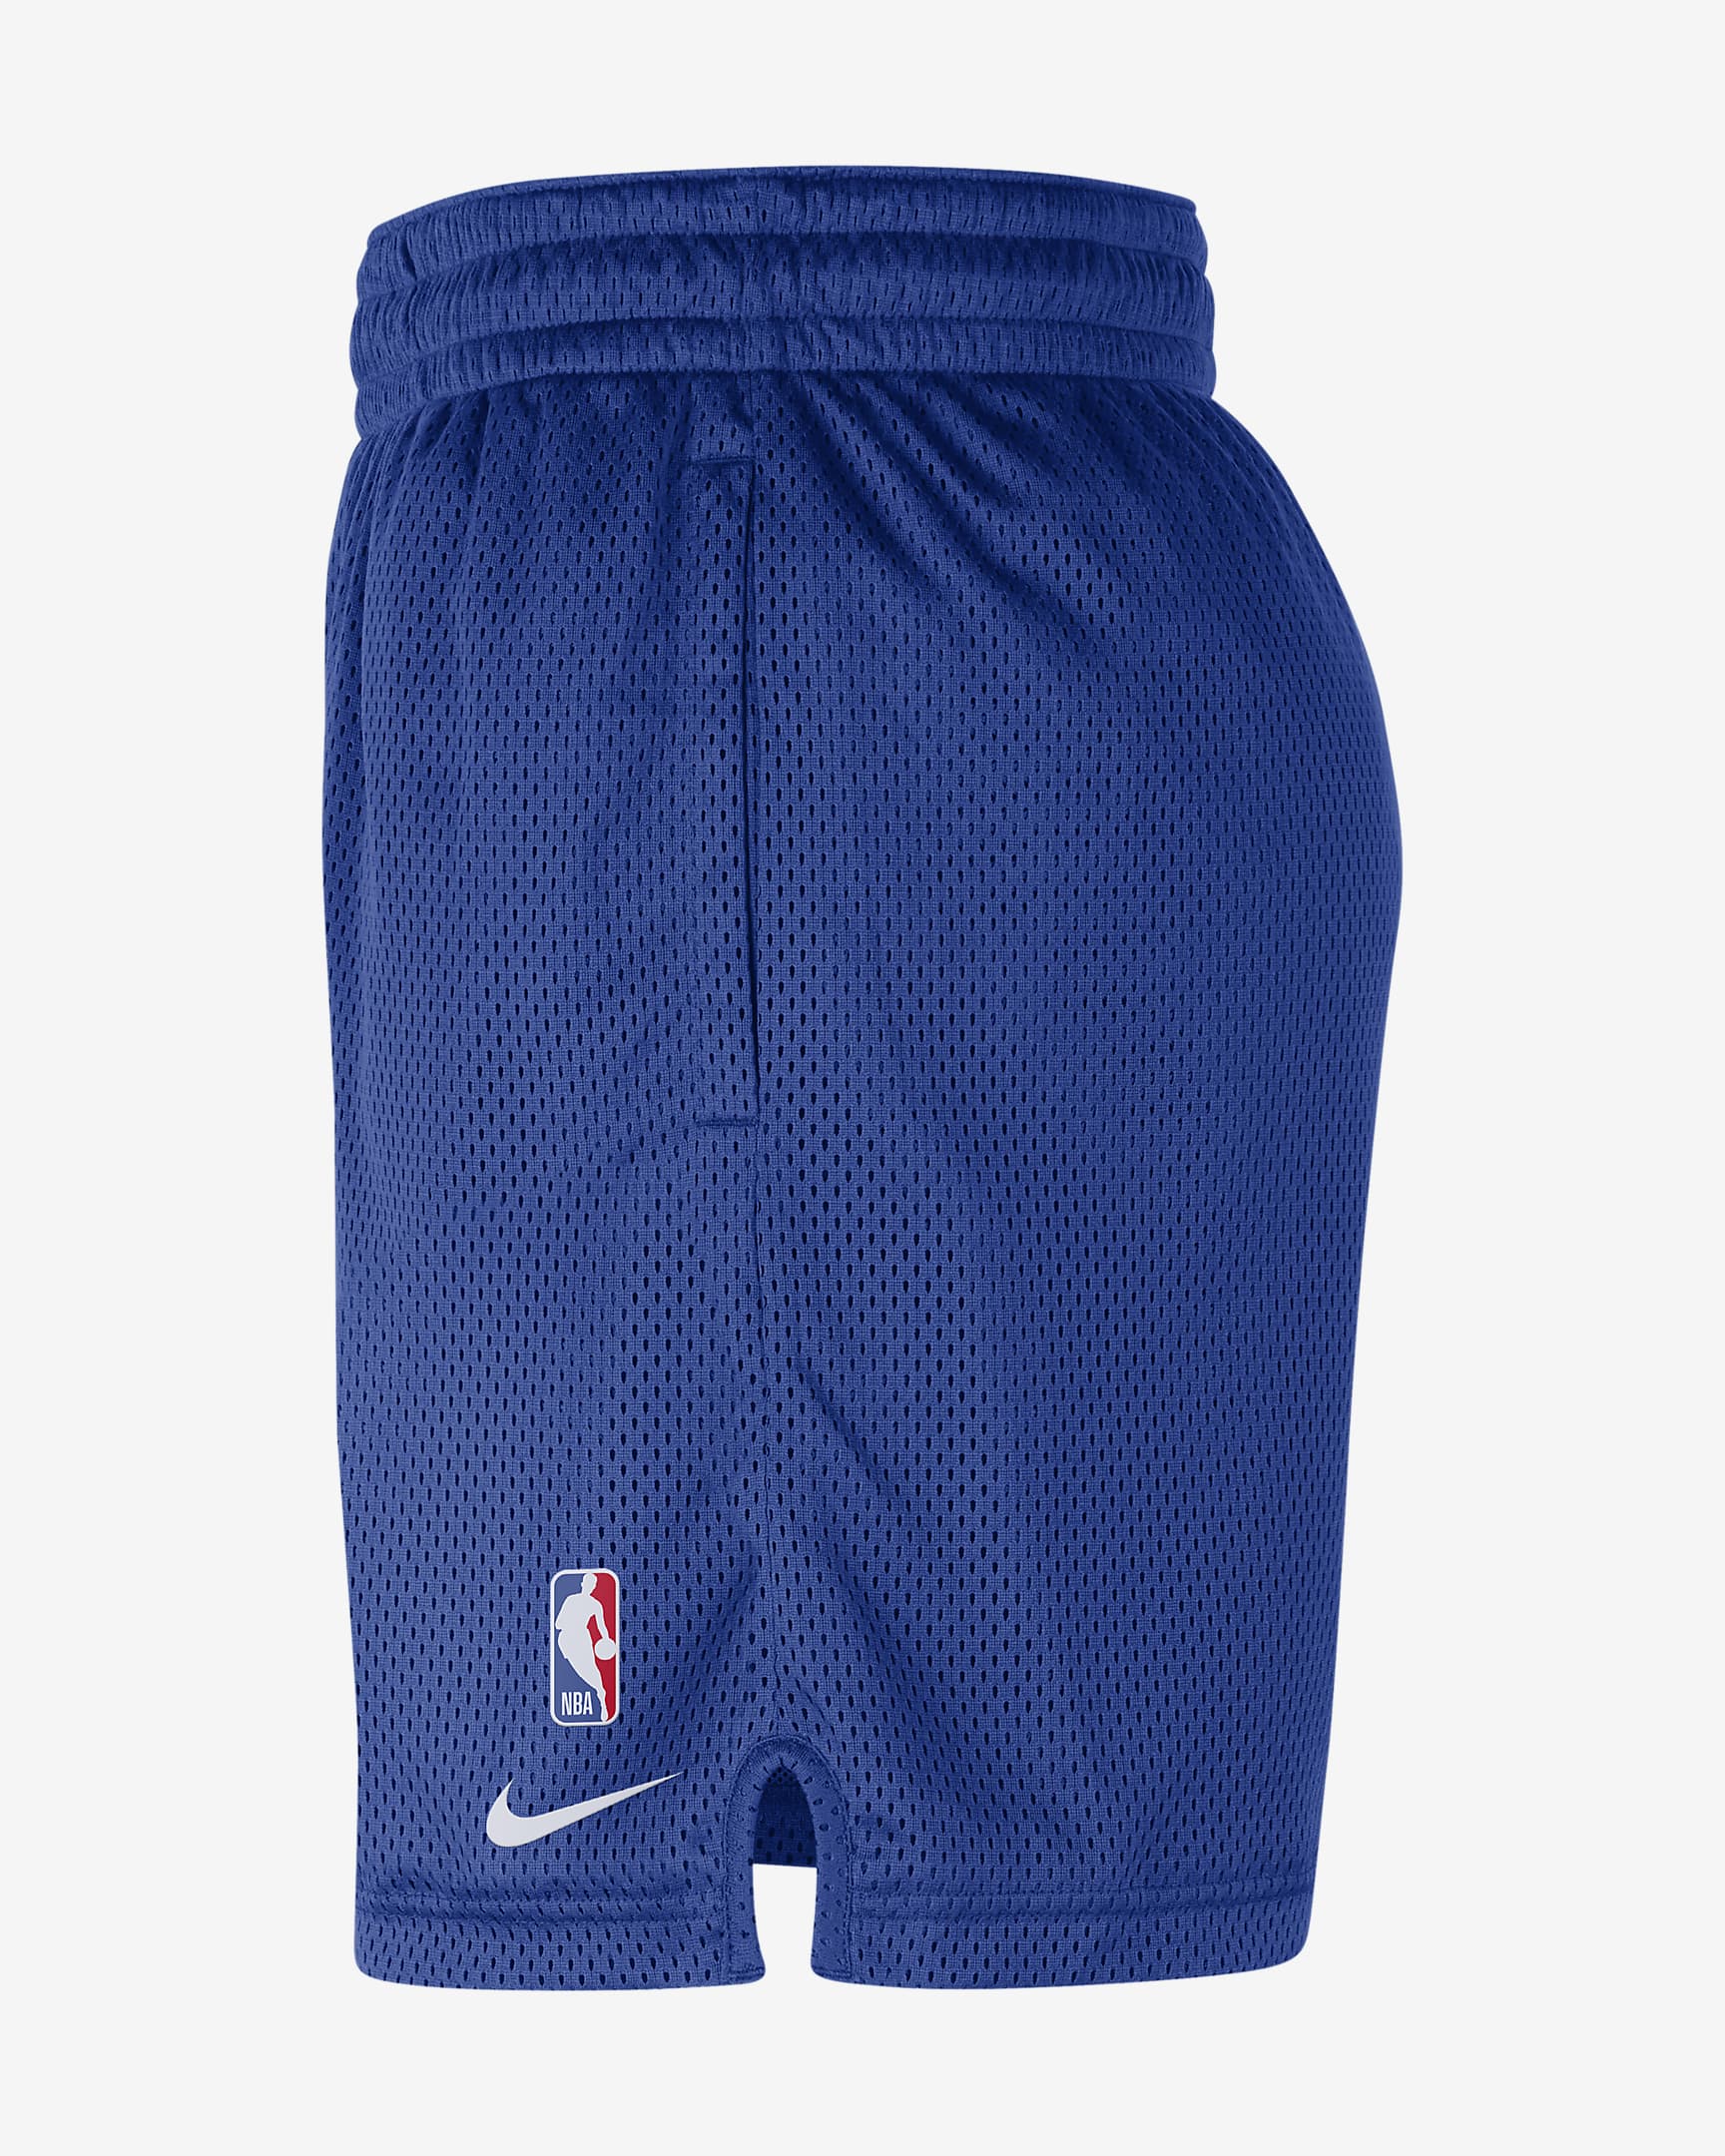 New York Knicks Men's Nike NBA Shorts. Nike.com